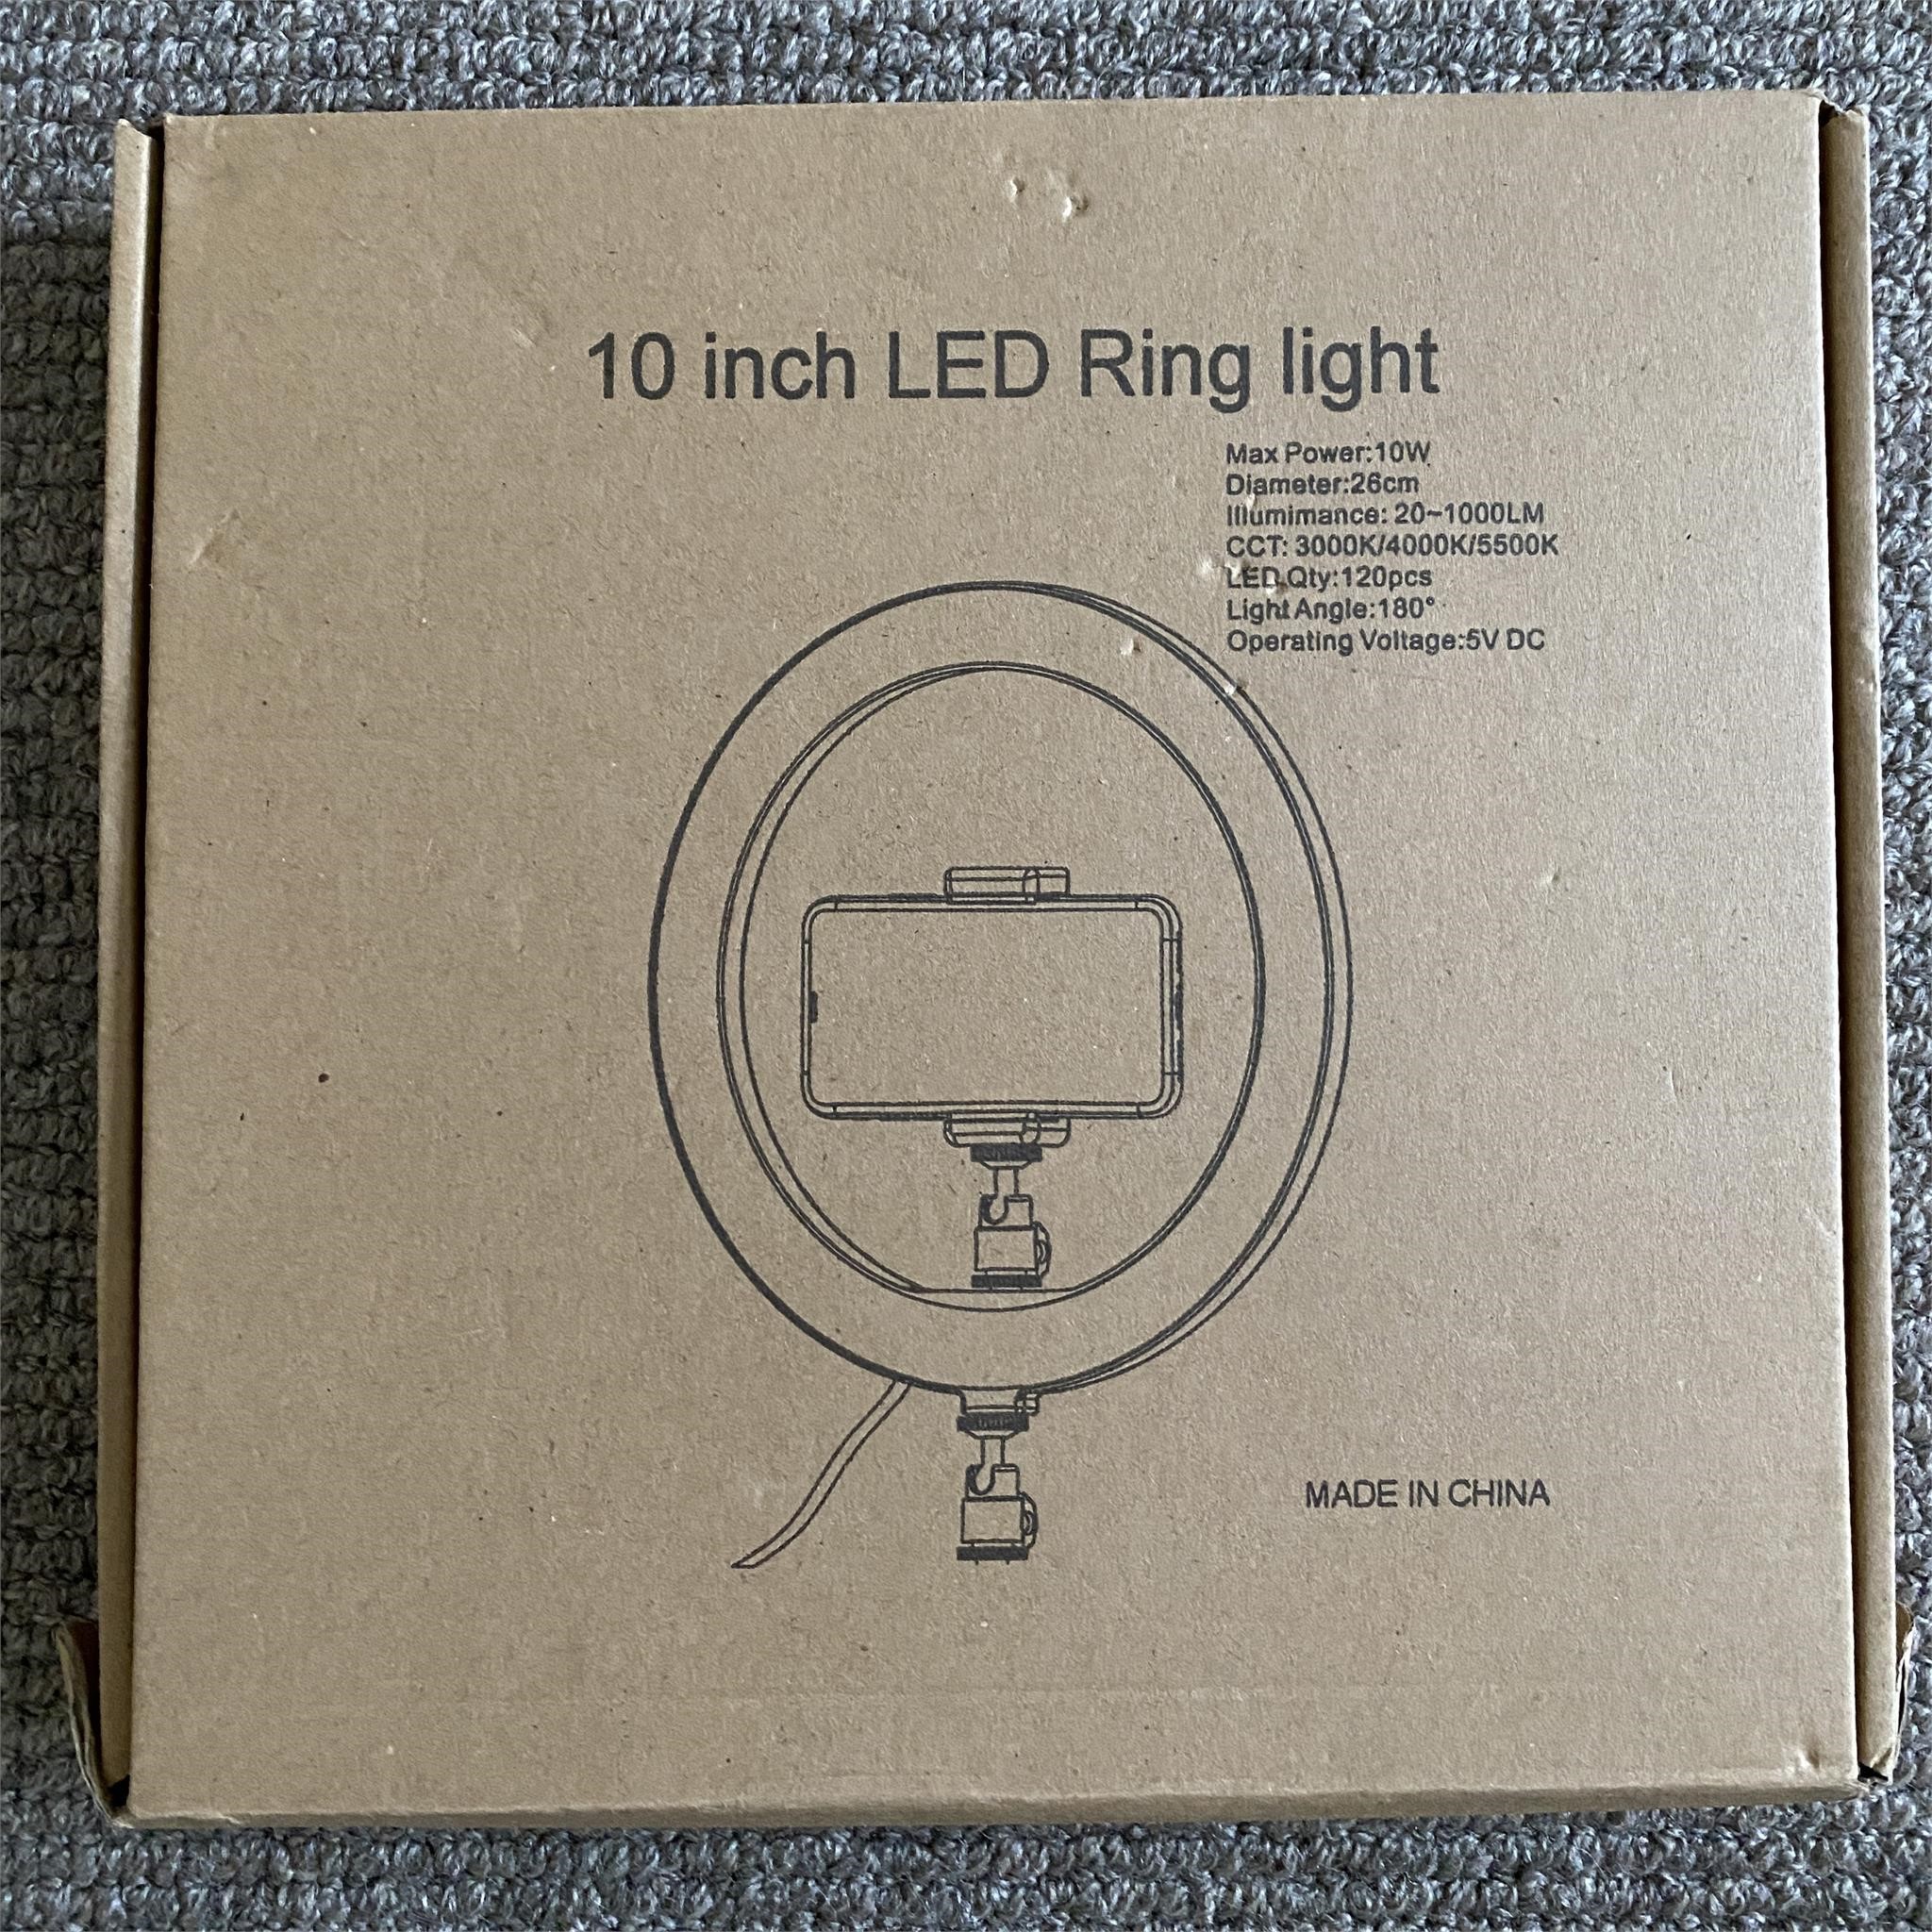 10” LED Ring light